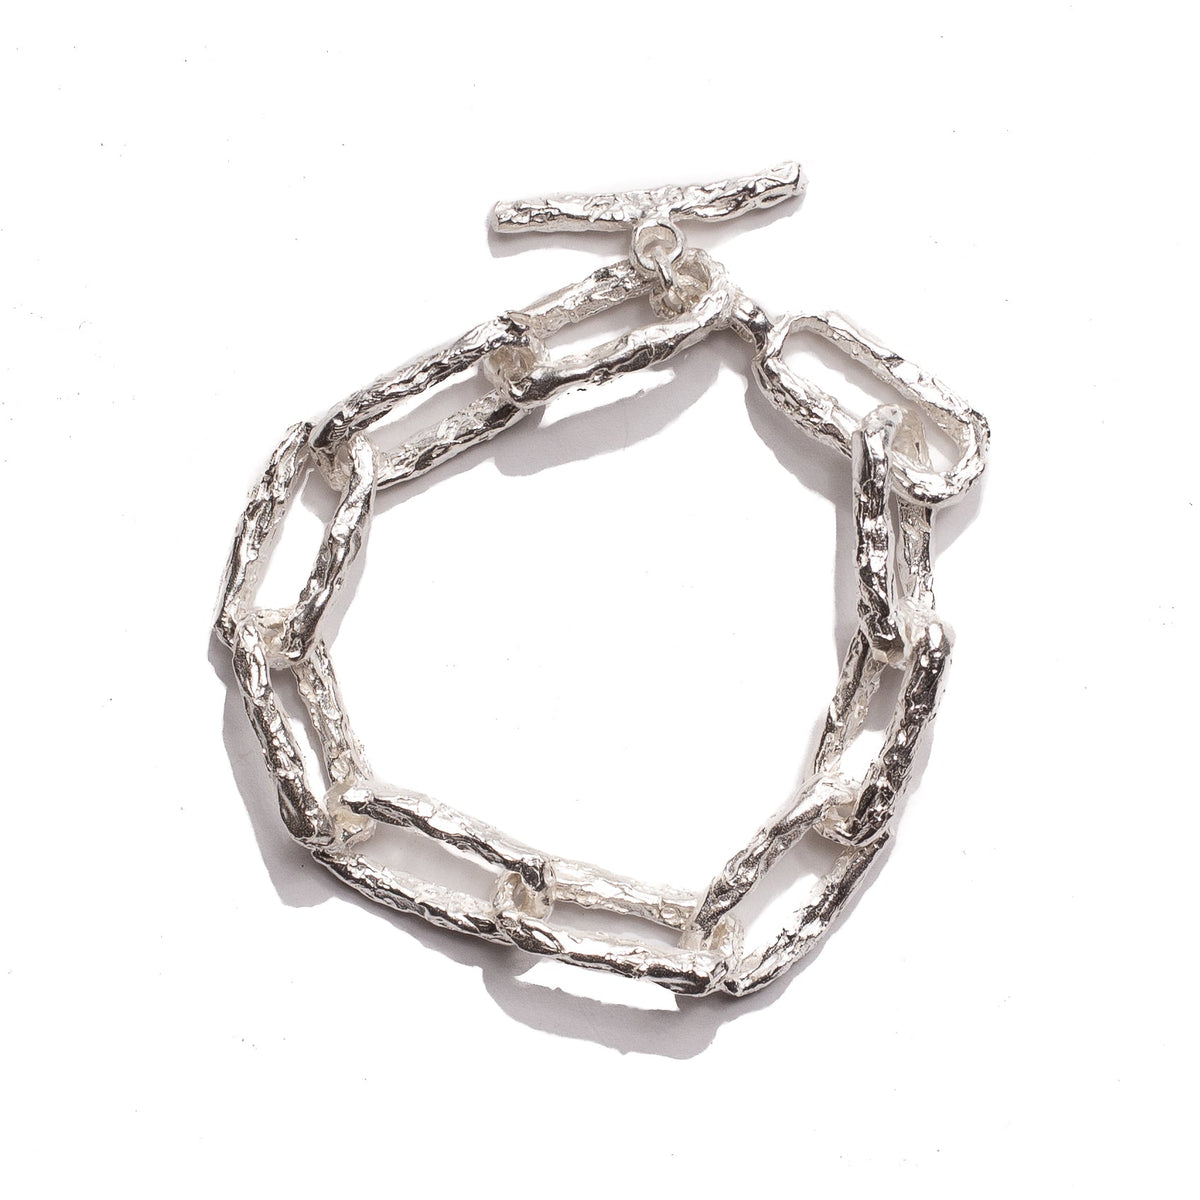 Silver Louis Vuitton Monogram Chain Link Bracelet